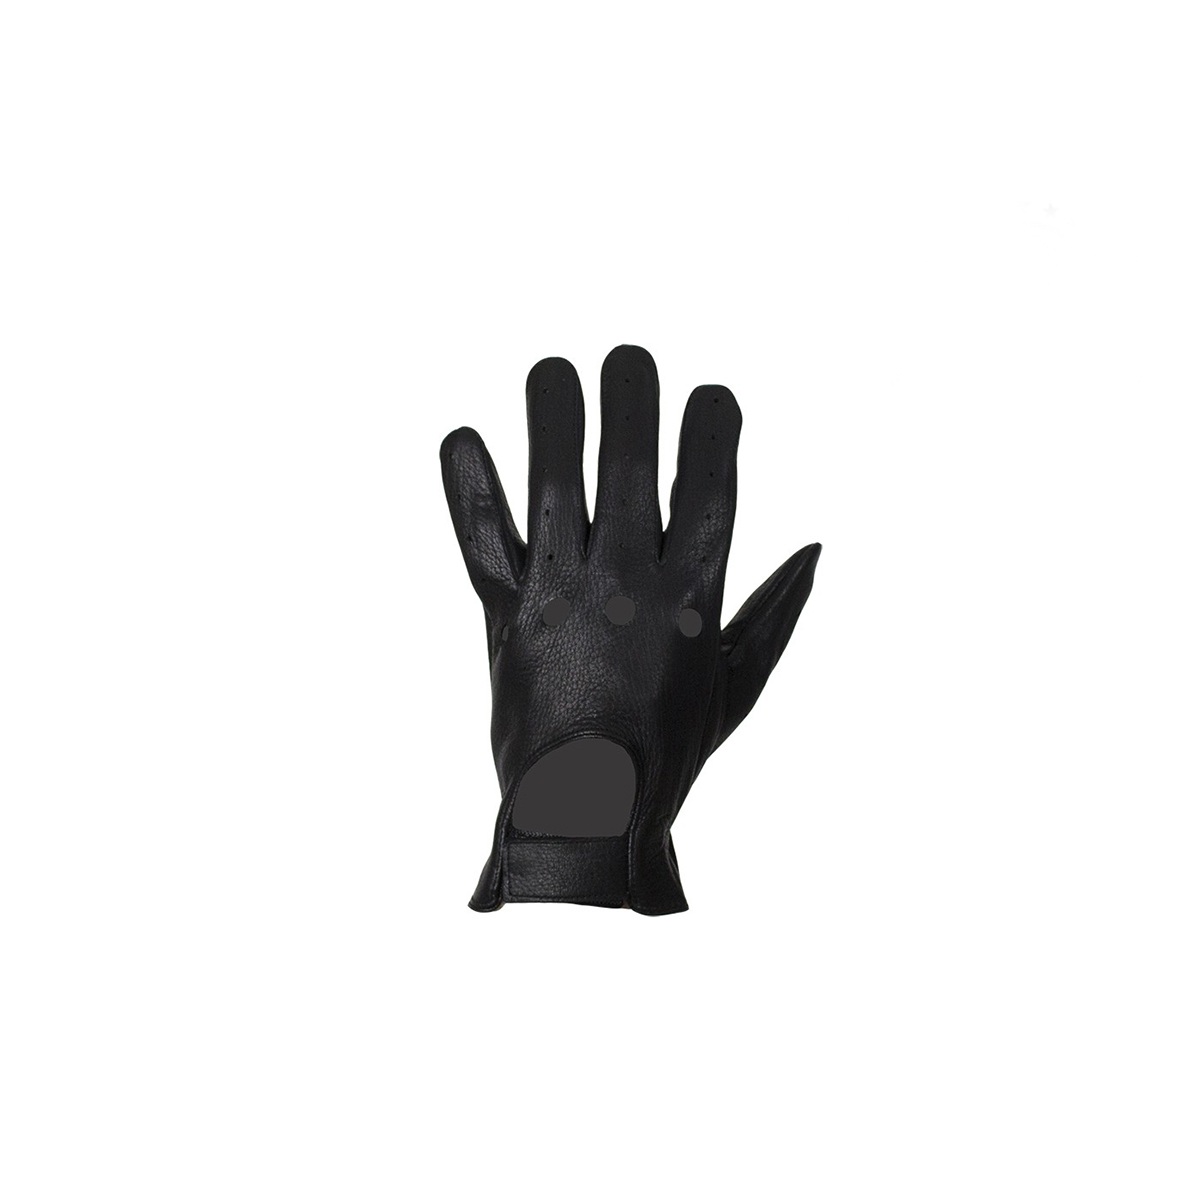 Vented Black Deer Skin Leather Riding Gloves